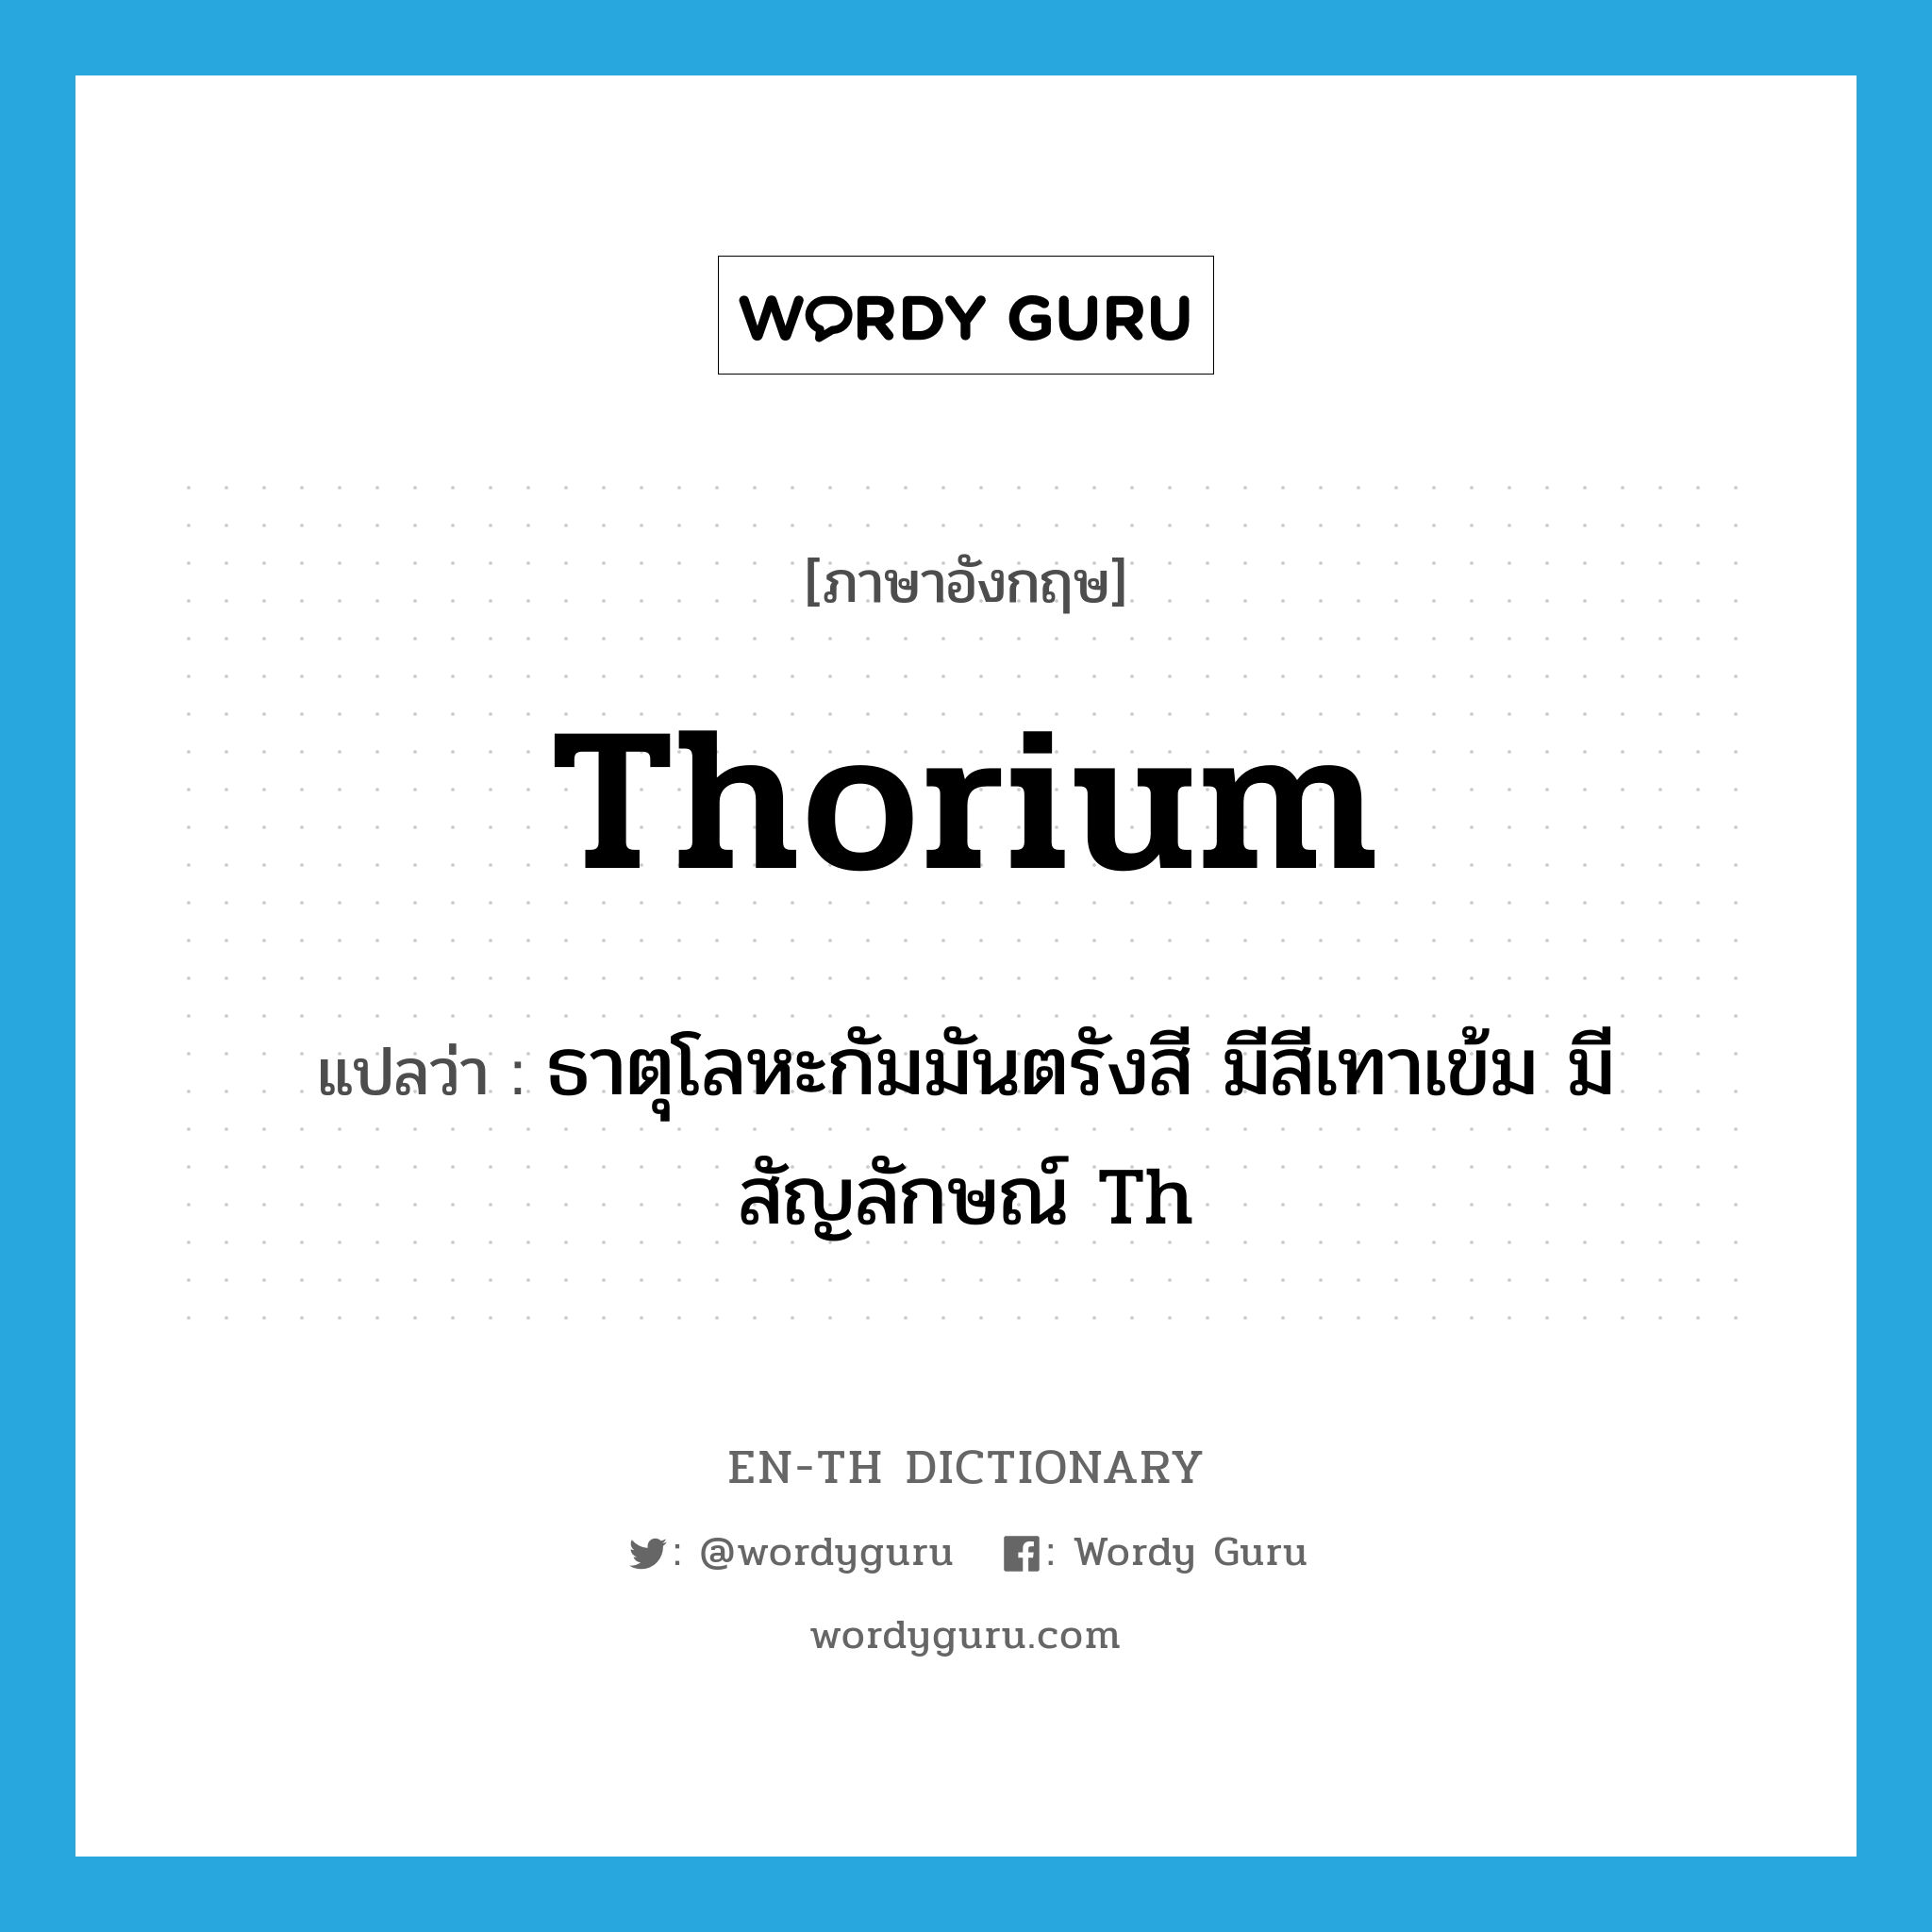 ธาตุโลหะกัมมันตรังสี มีสีเทาเข้ม มีสัญลักษณ์ Th ภาษาอังกฤษ?, คำศัพท์ภาษาอังกฤษ ธาตุโลหะกัมมันตรังสี มีสีเทาเข้ม มีสัญลักษณ์ Th แปลว่า thorium ประเภท N หมวด N